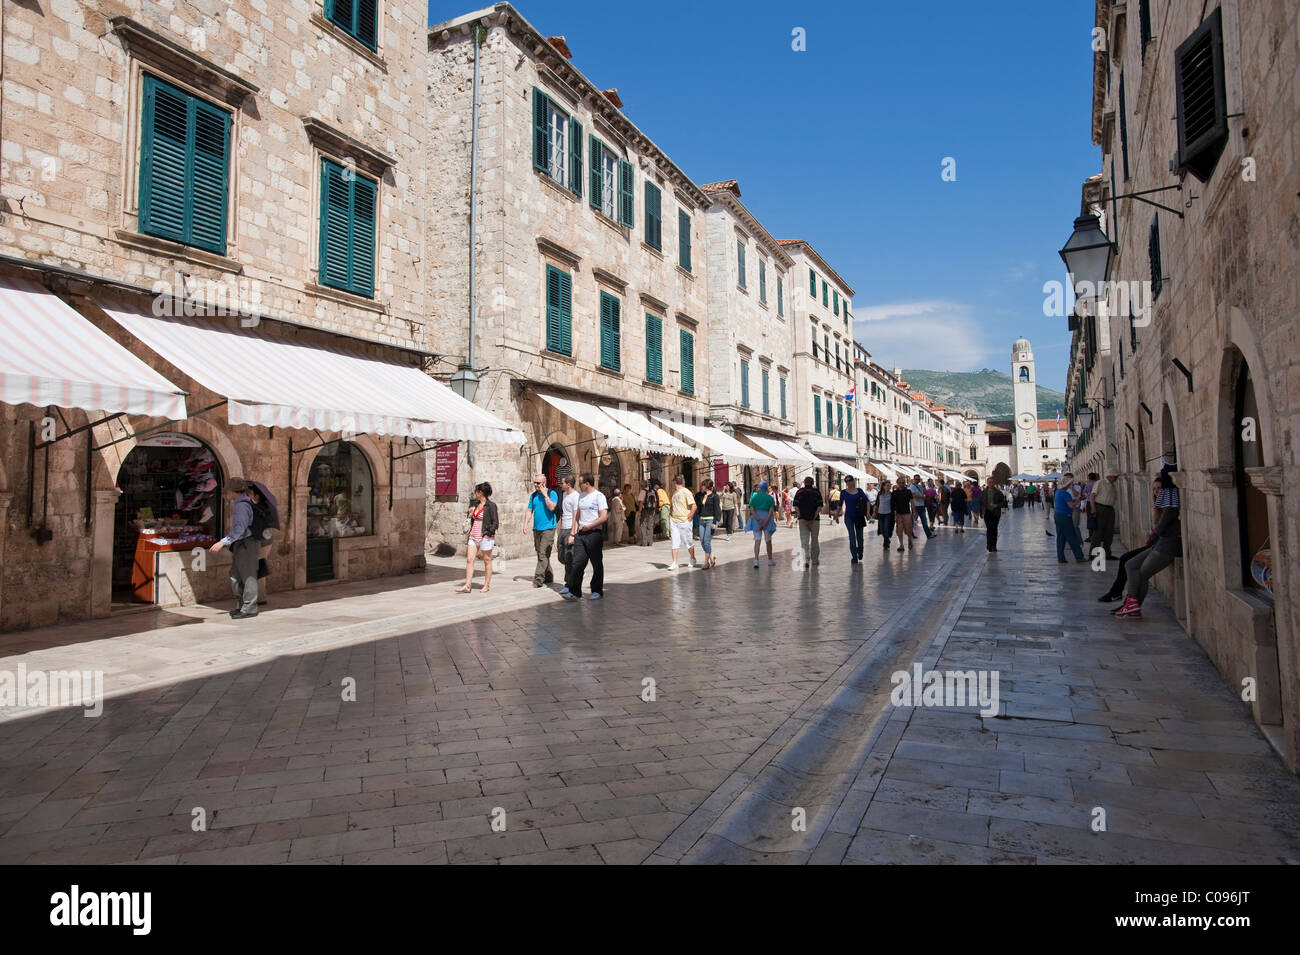 La Placa, Stradun, vieille ville, comté de Dubrovnik, Dubrovnik, Croatie, Europe Banque D'Images